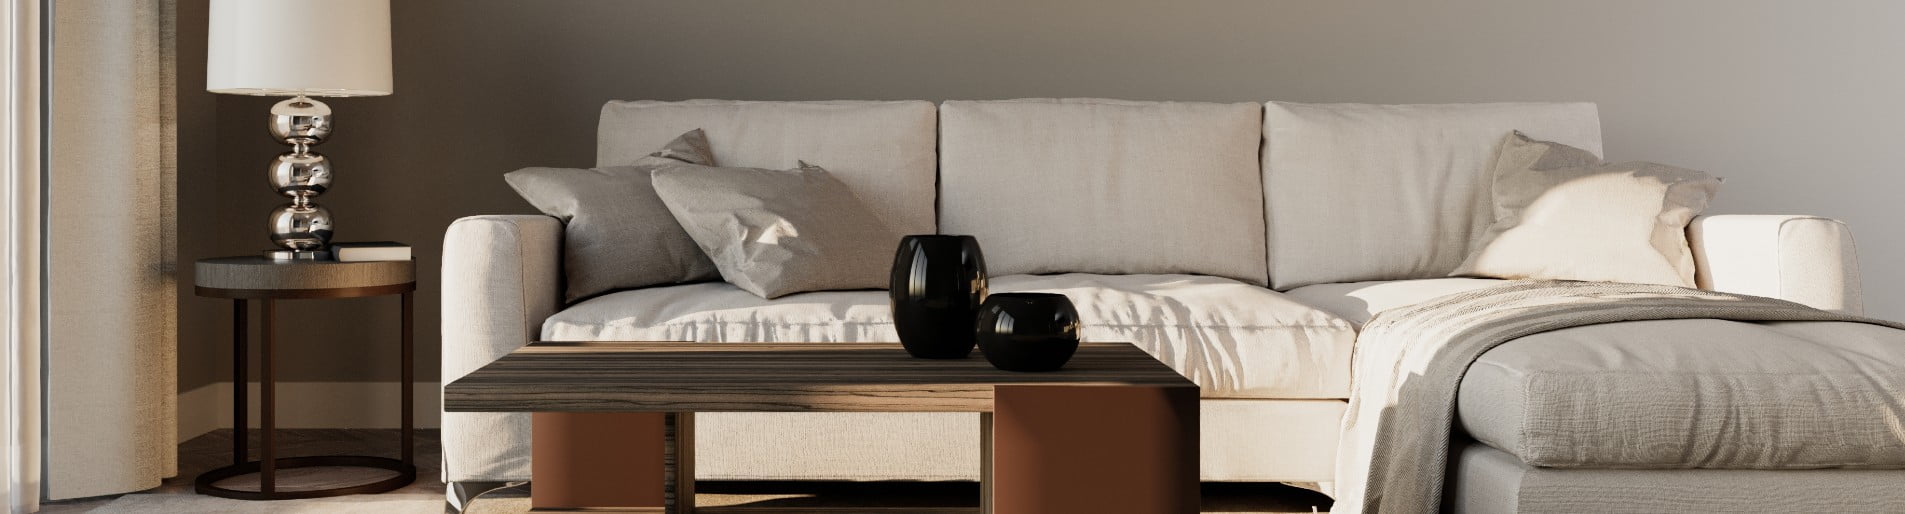 minimalist-living room